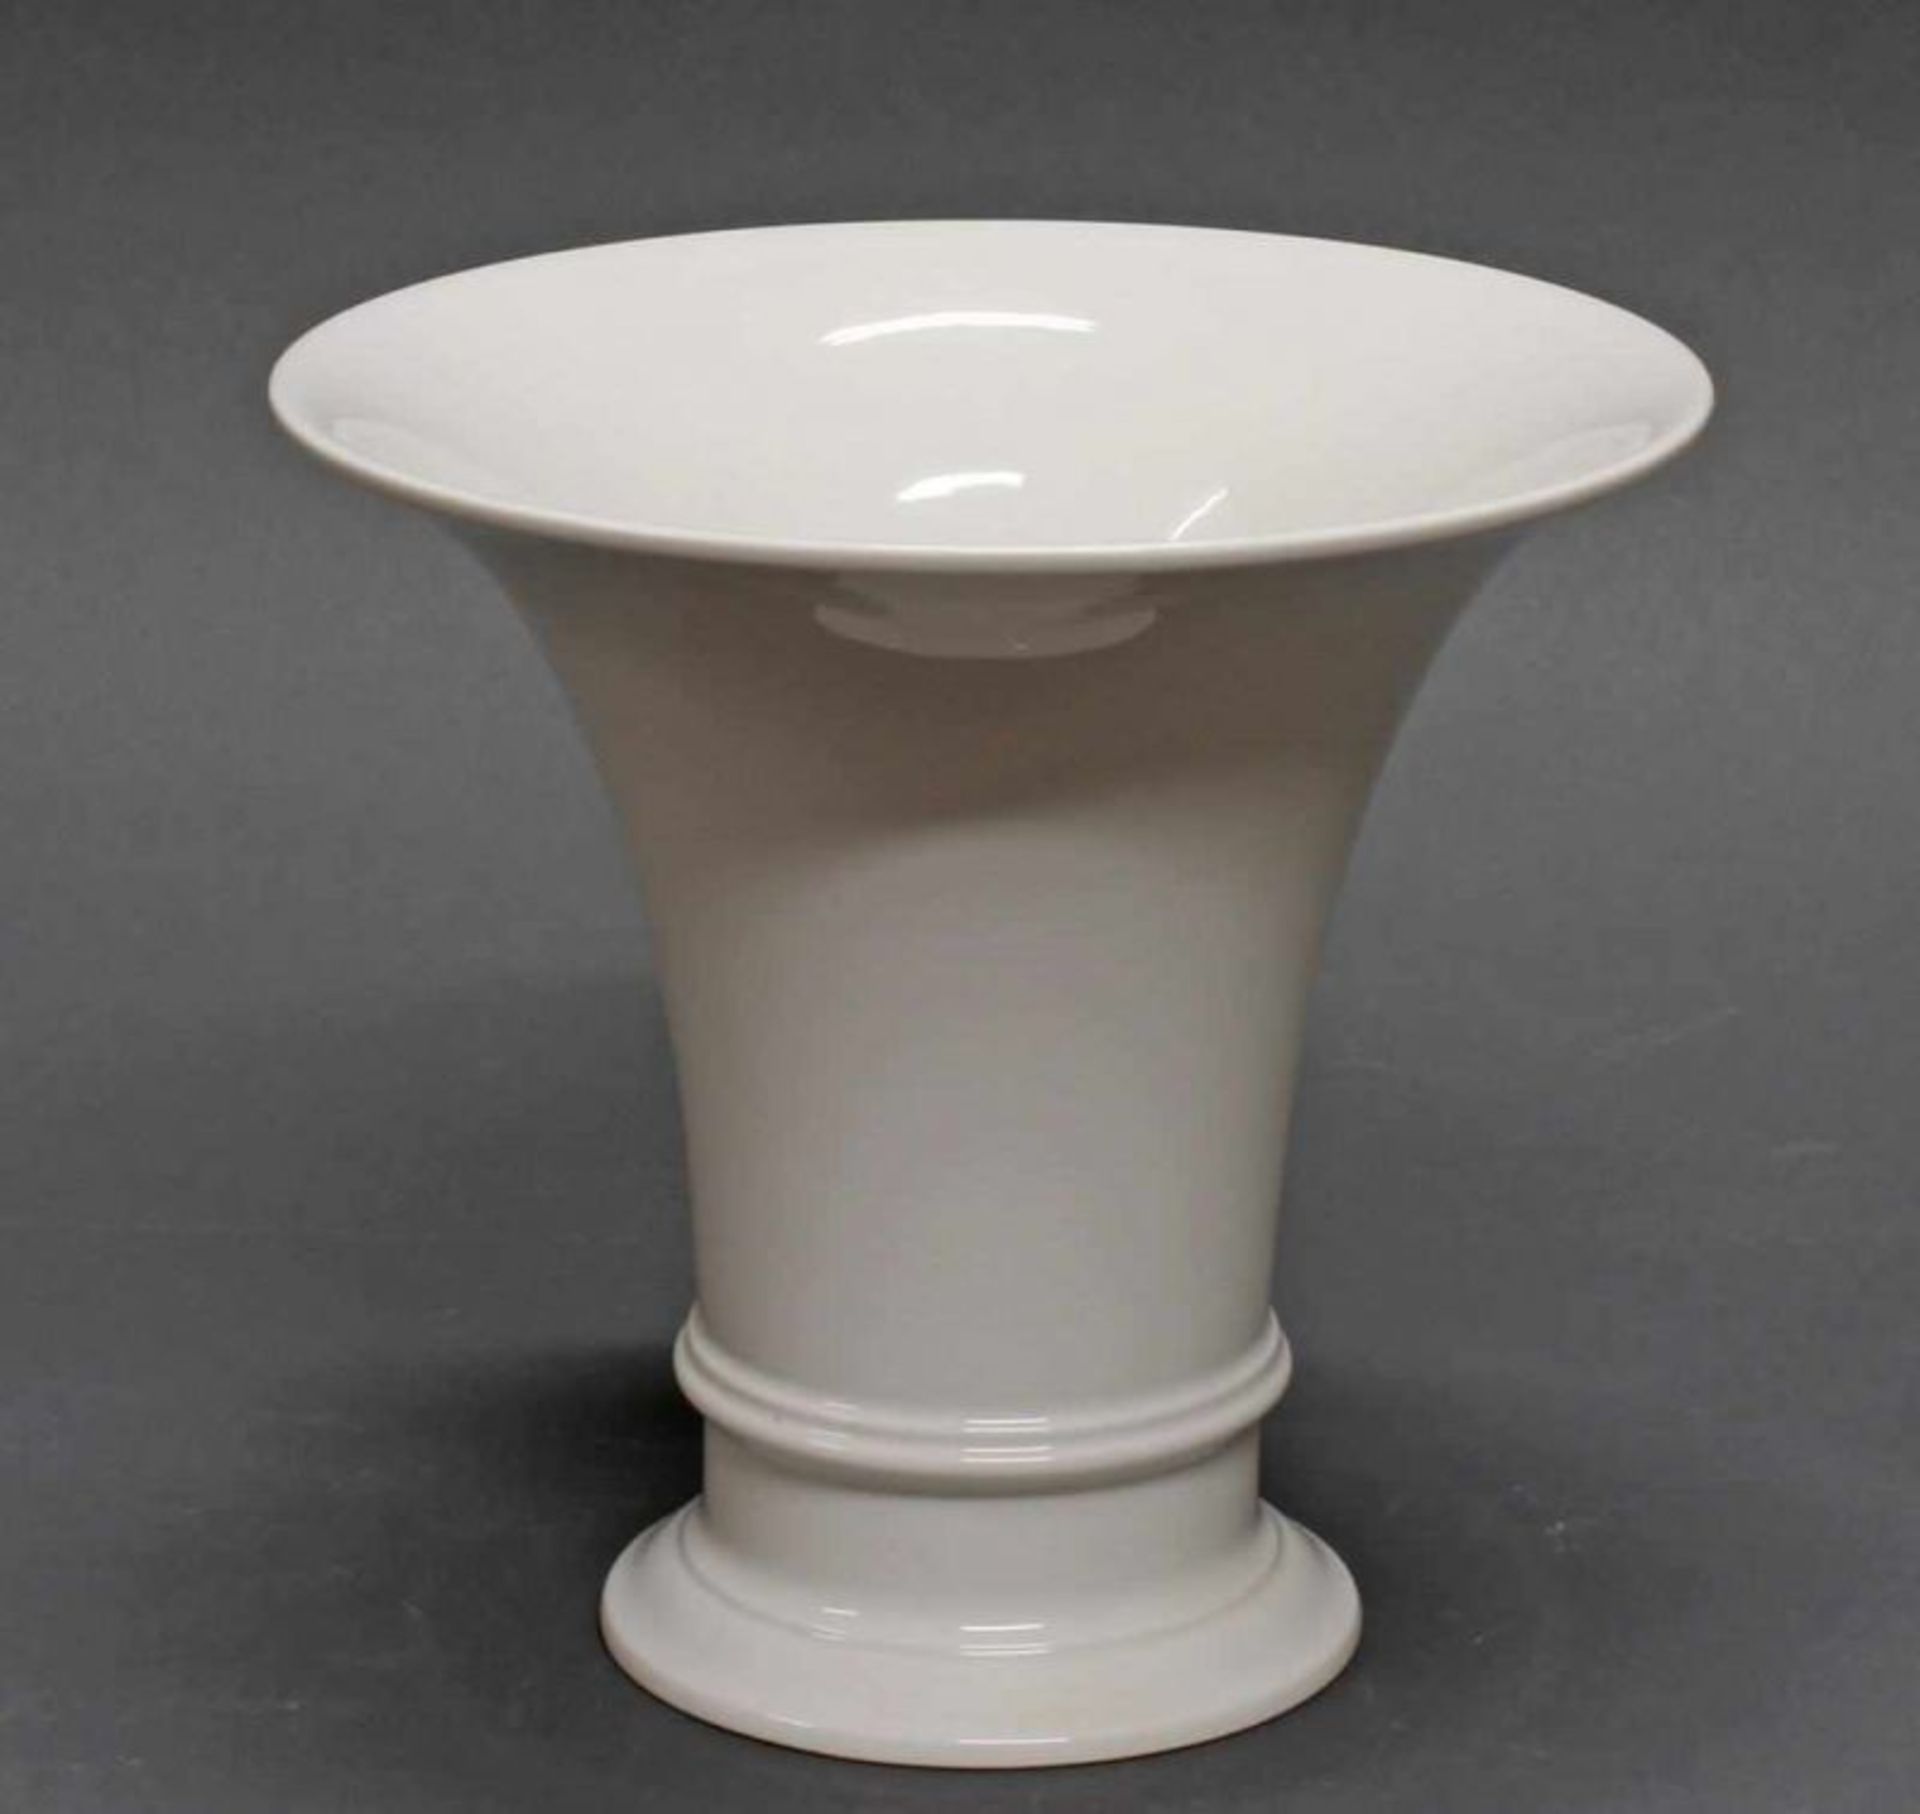 Vase, KPM Berlin, Trompetenform, Weißporzellan, 18.5 cm hoch 20.00 % buyer's premium on the hammer